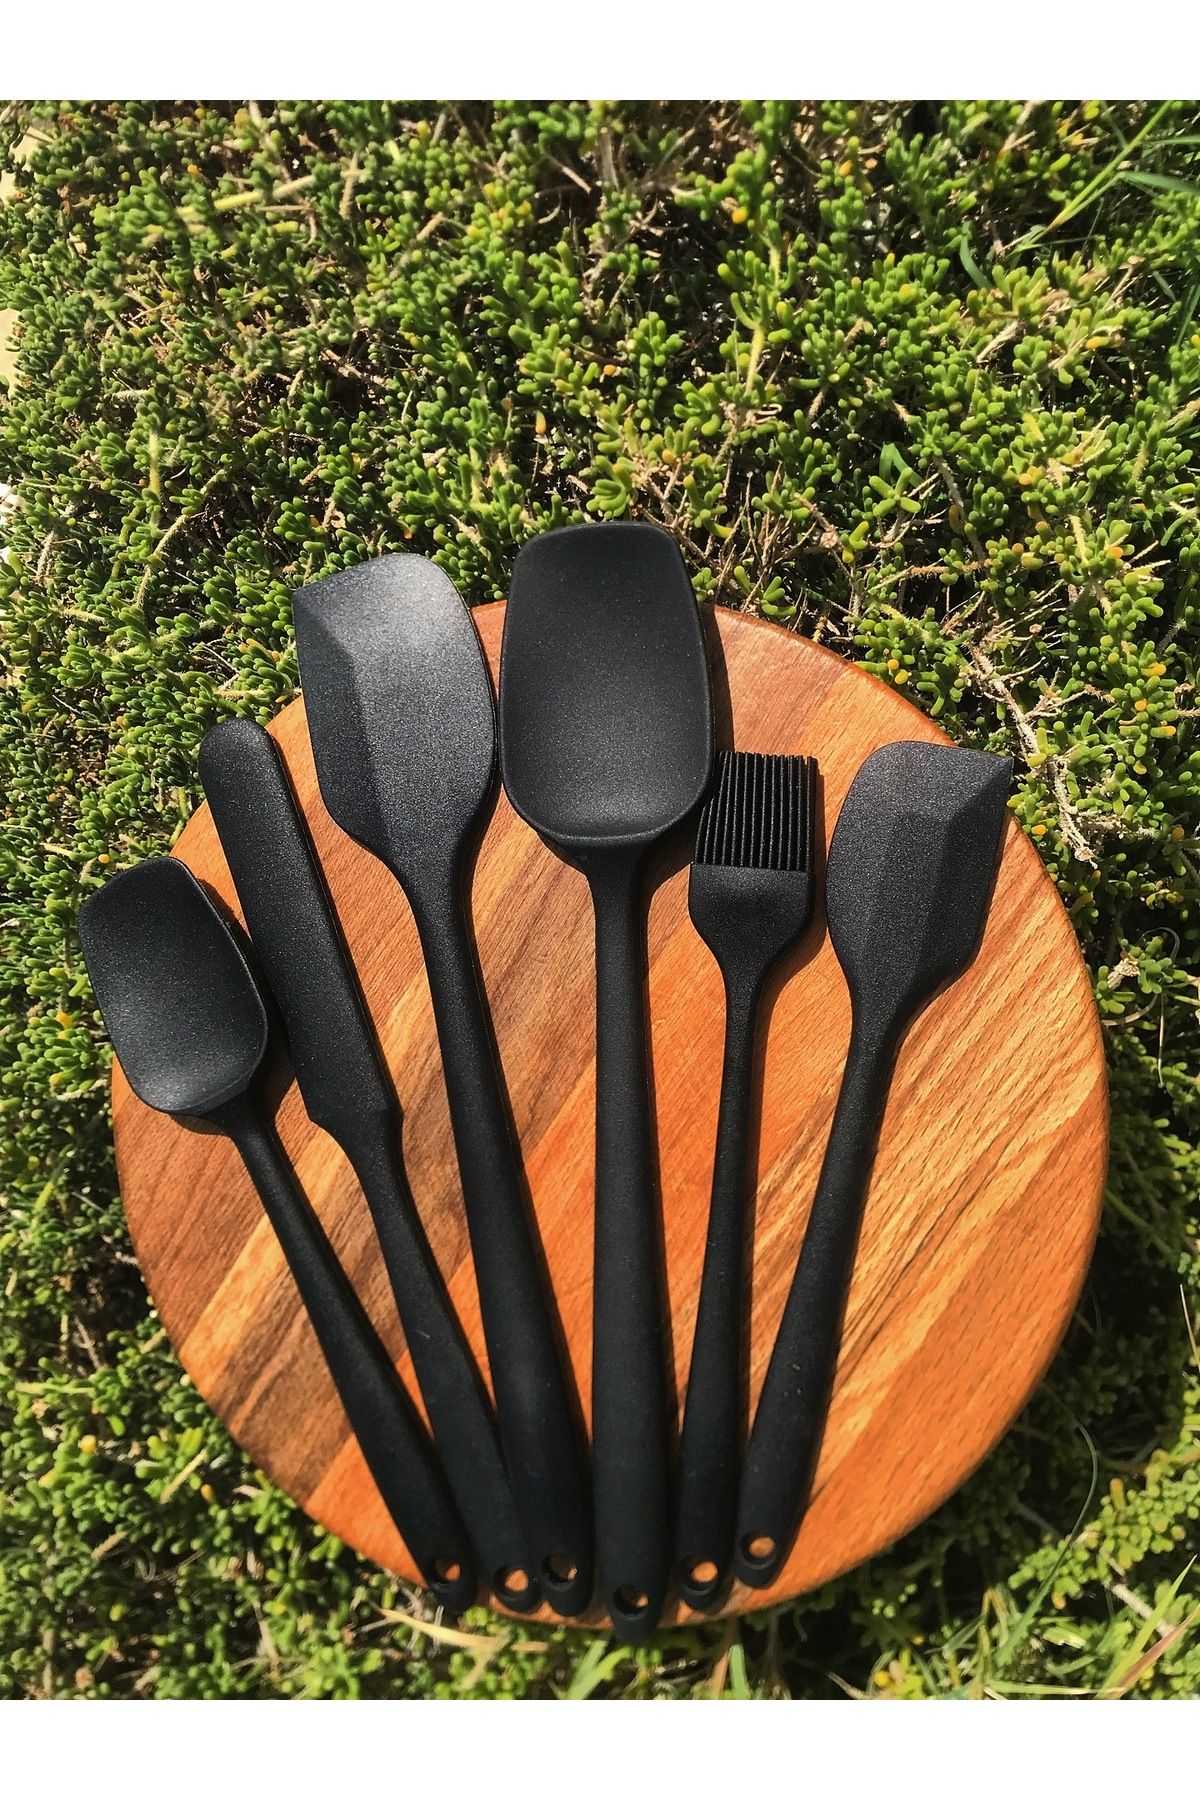 DMR siyah silikon spatula kaşık seti 6lı